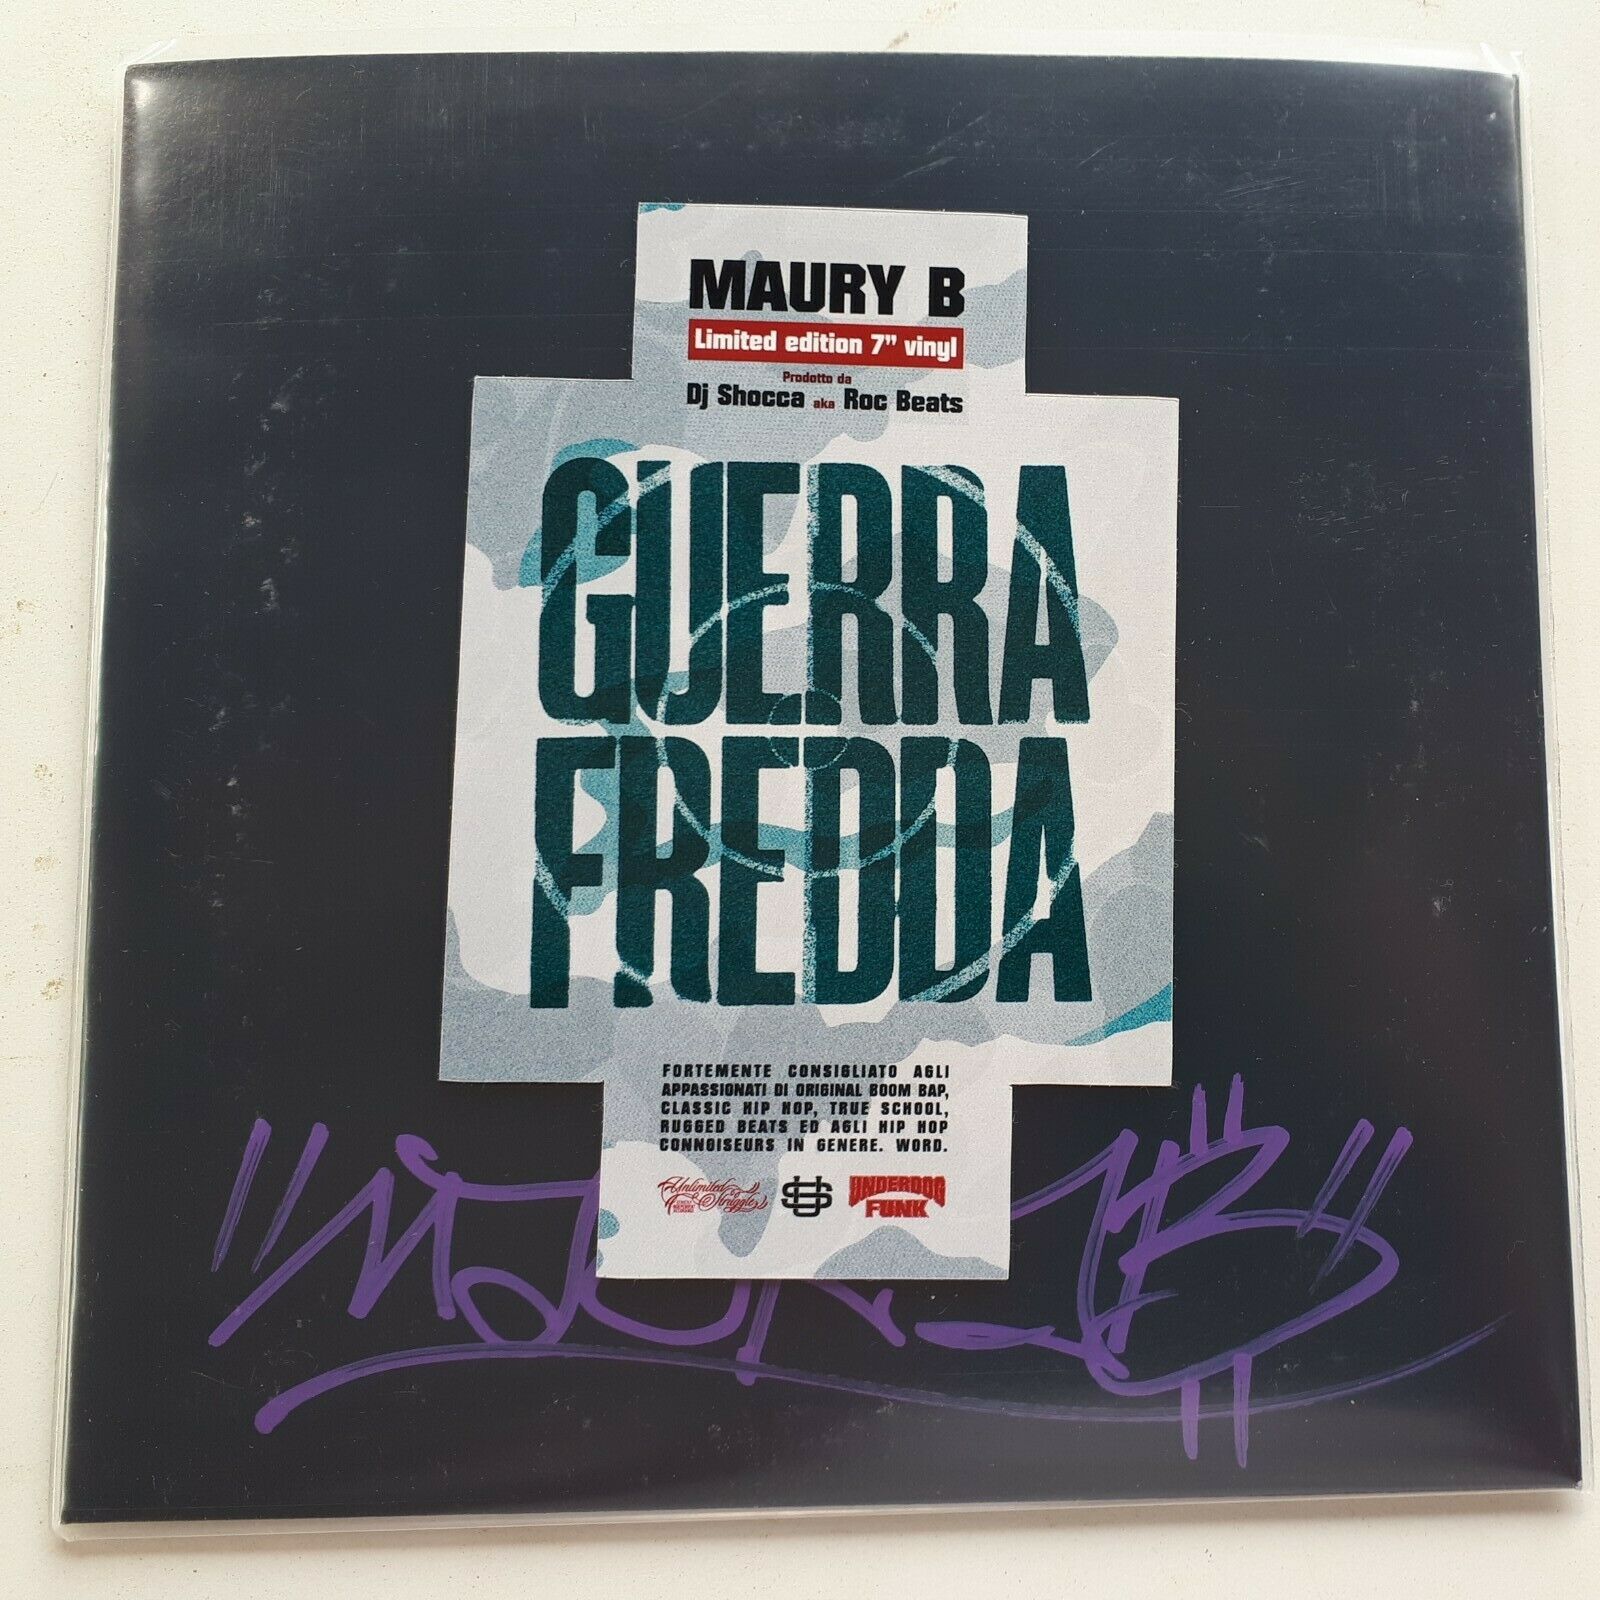 Maury B & DJ Shocca aka Roc Beats - Guerra Fredda